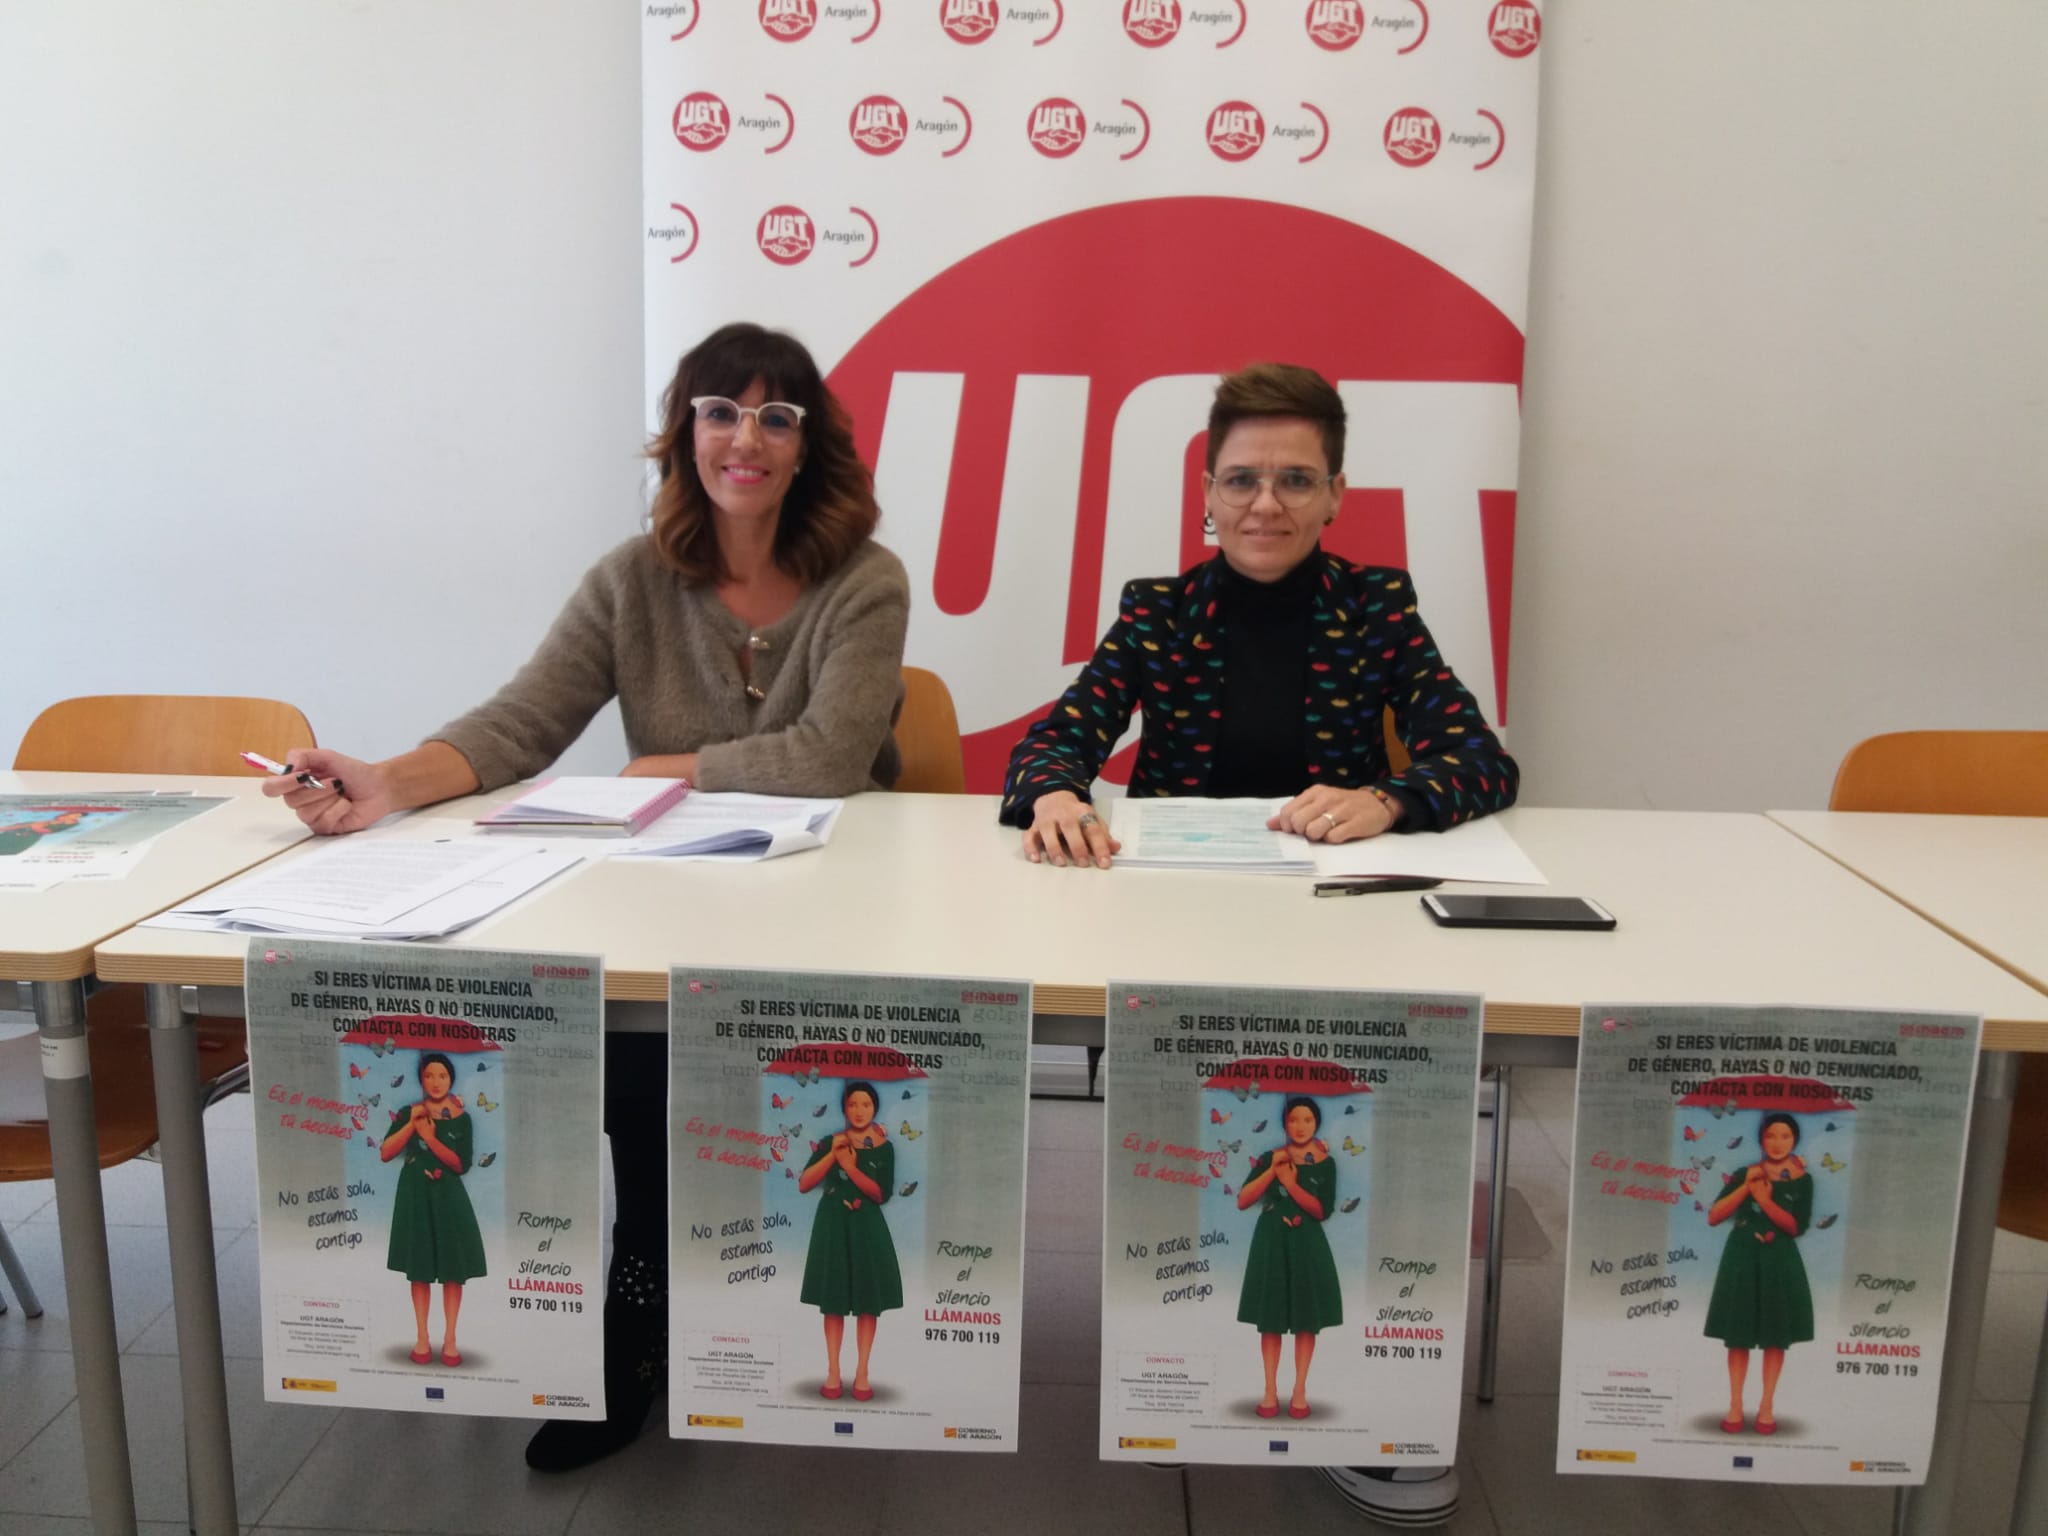  UGT Aragón  satisfecha con los resultados de inserción laboral del  programa de jóvenes desempleadas  víctimas de violencia de género